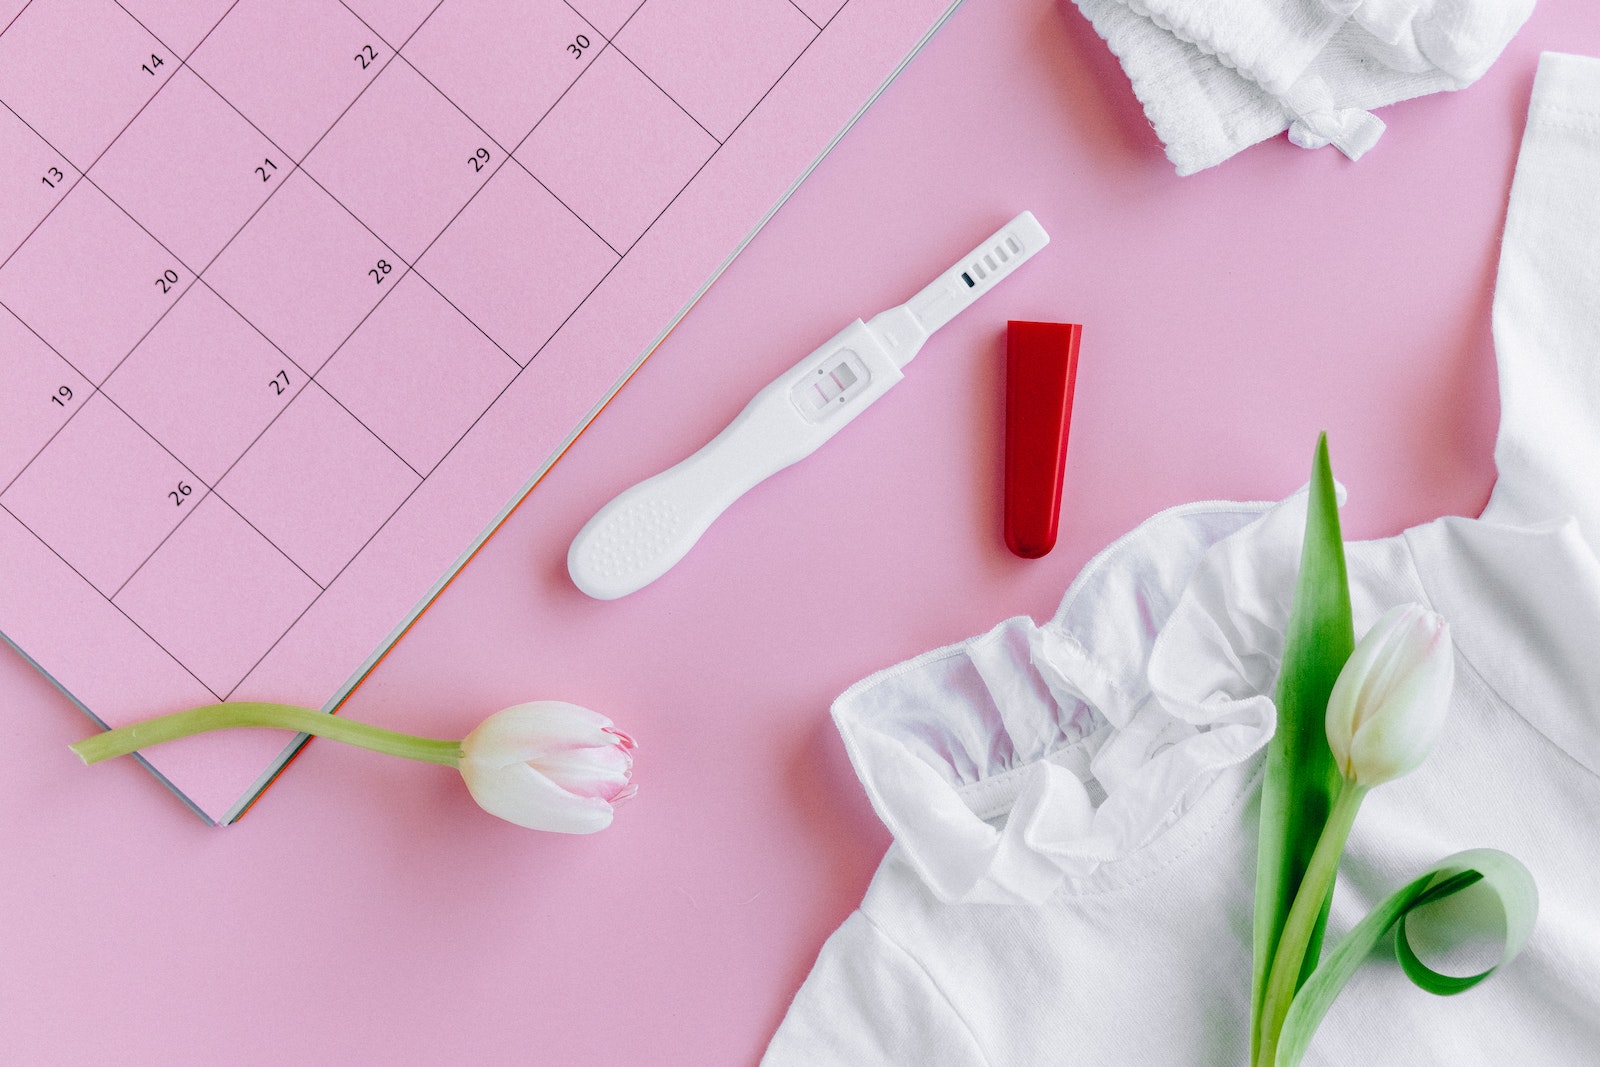 White Pregnancy Test Kit beside White Shirt